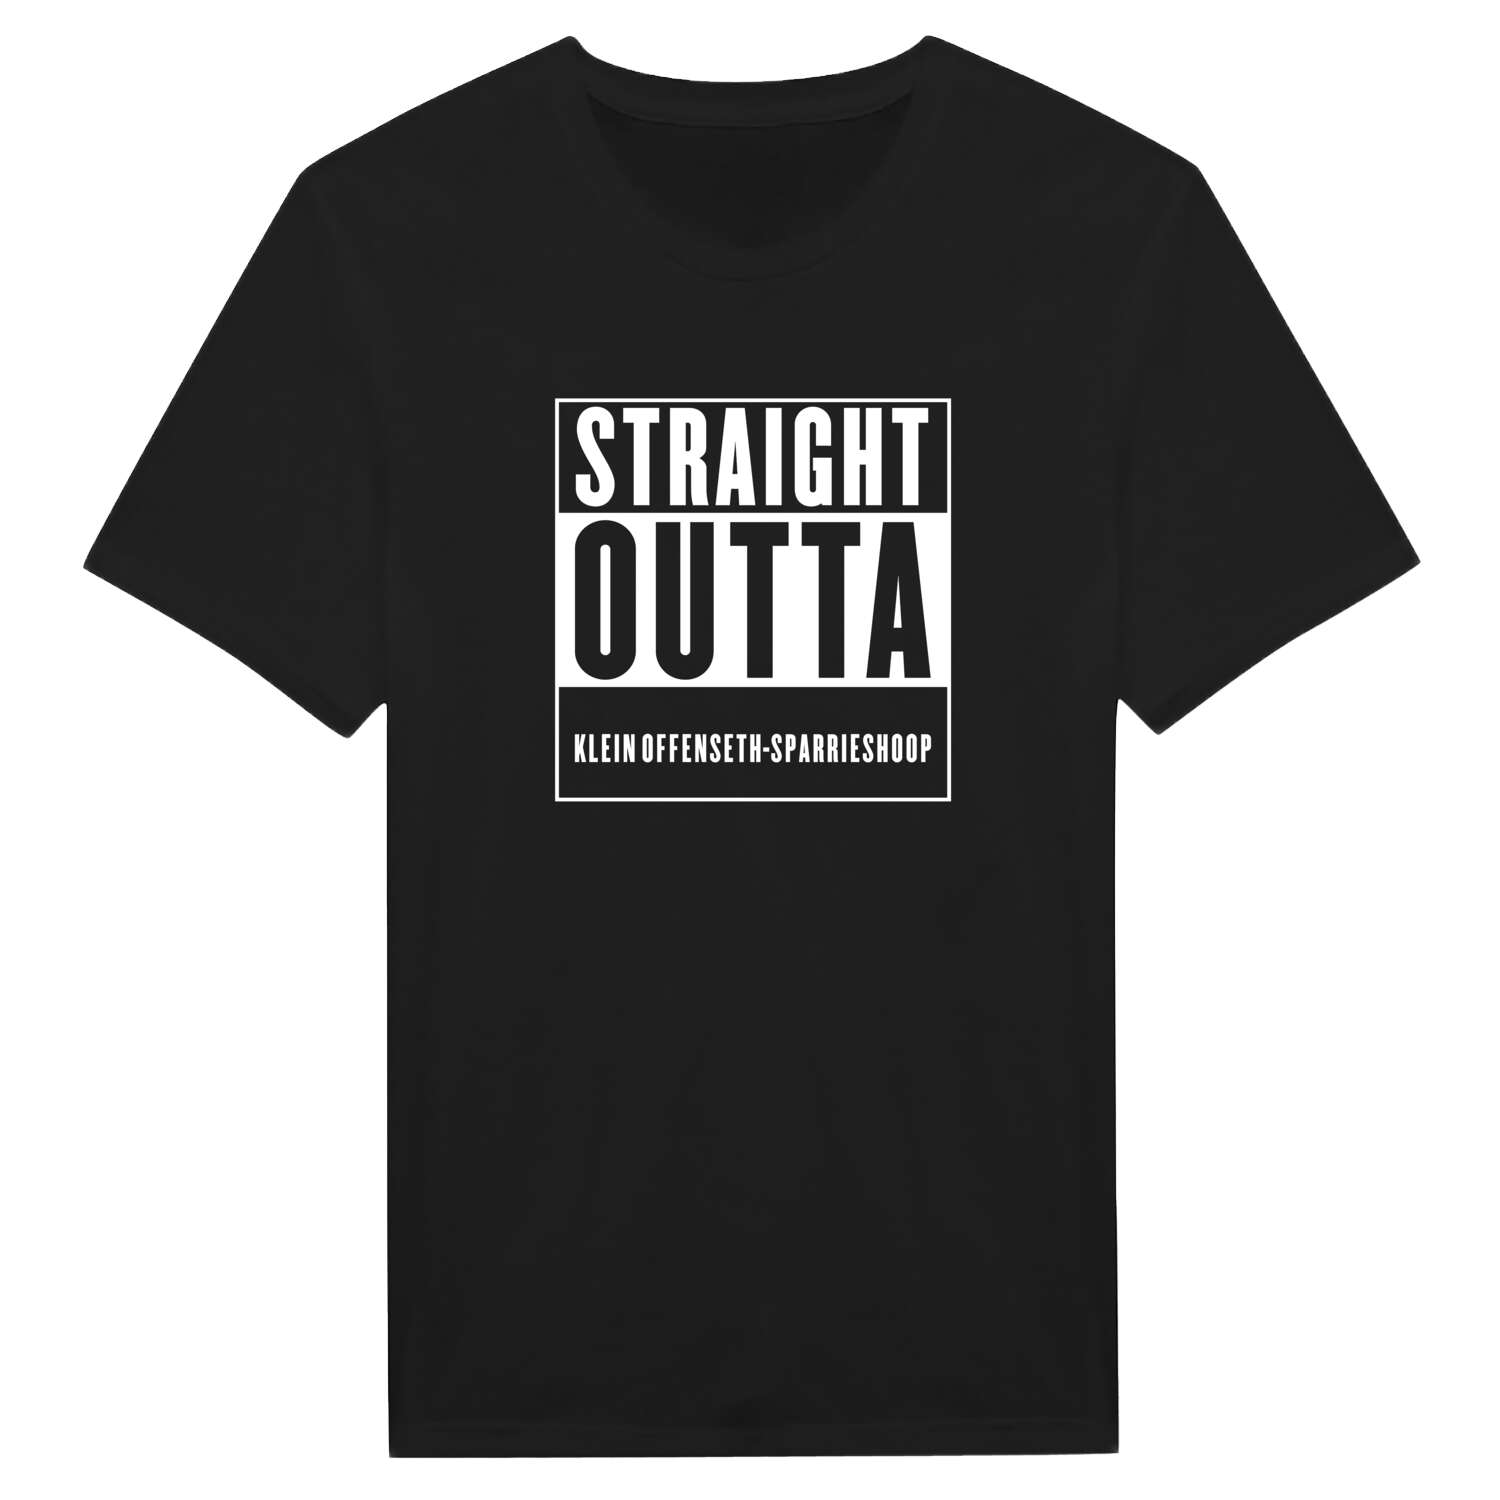 Klein Offenseth-Sparrieshoop T-Shirt »Straight Outta«